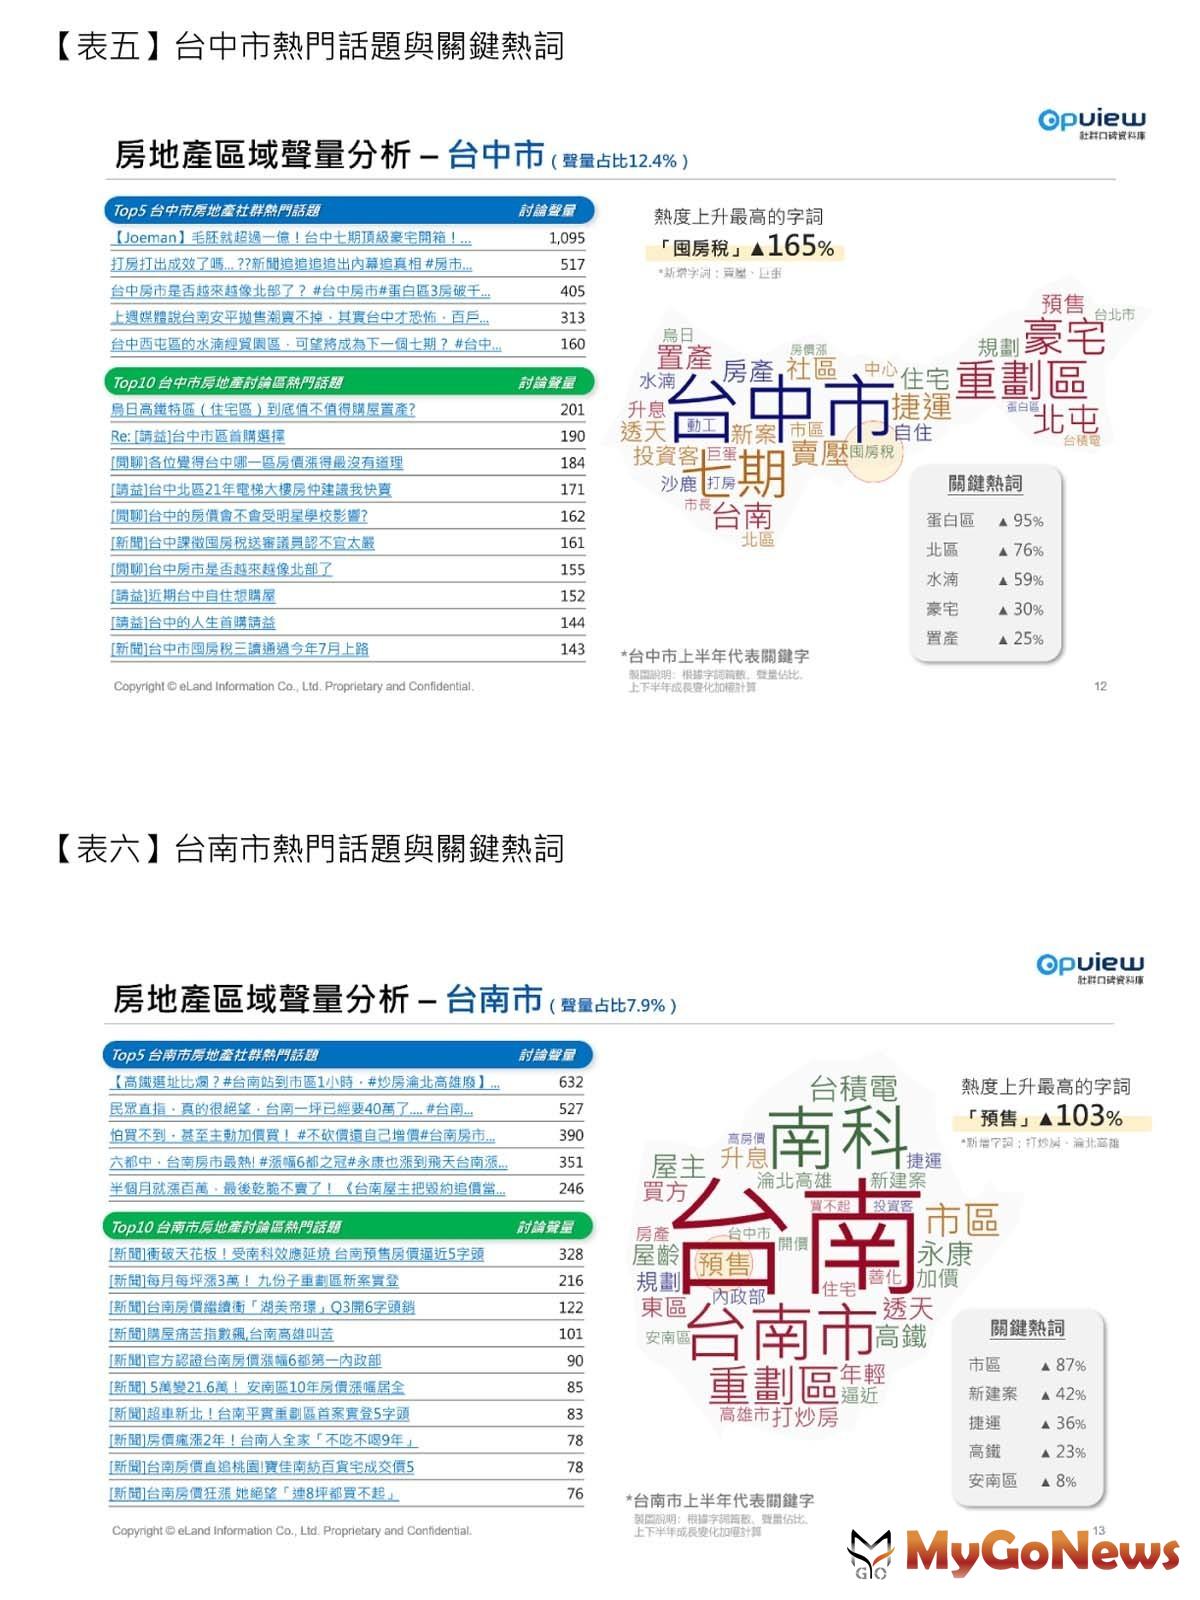 意藍資訊與彥星喬商共同發表的台灣房地產網路聲量調查 MyGoNews房地產新聞 市場快訊